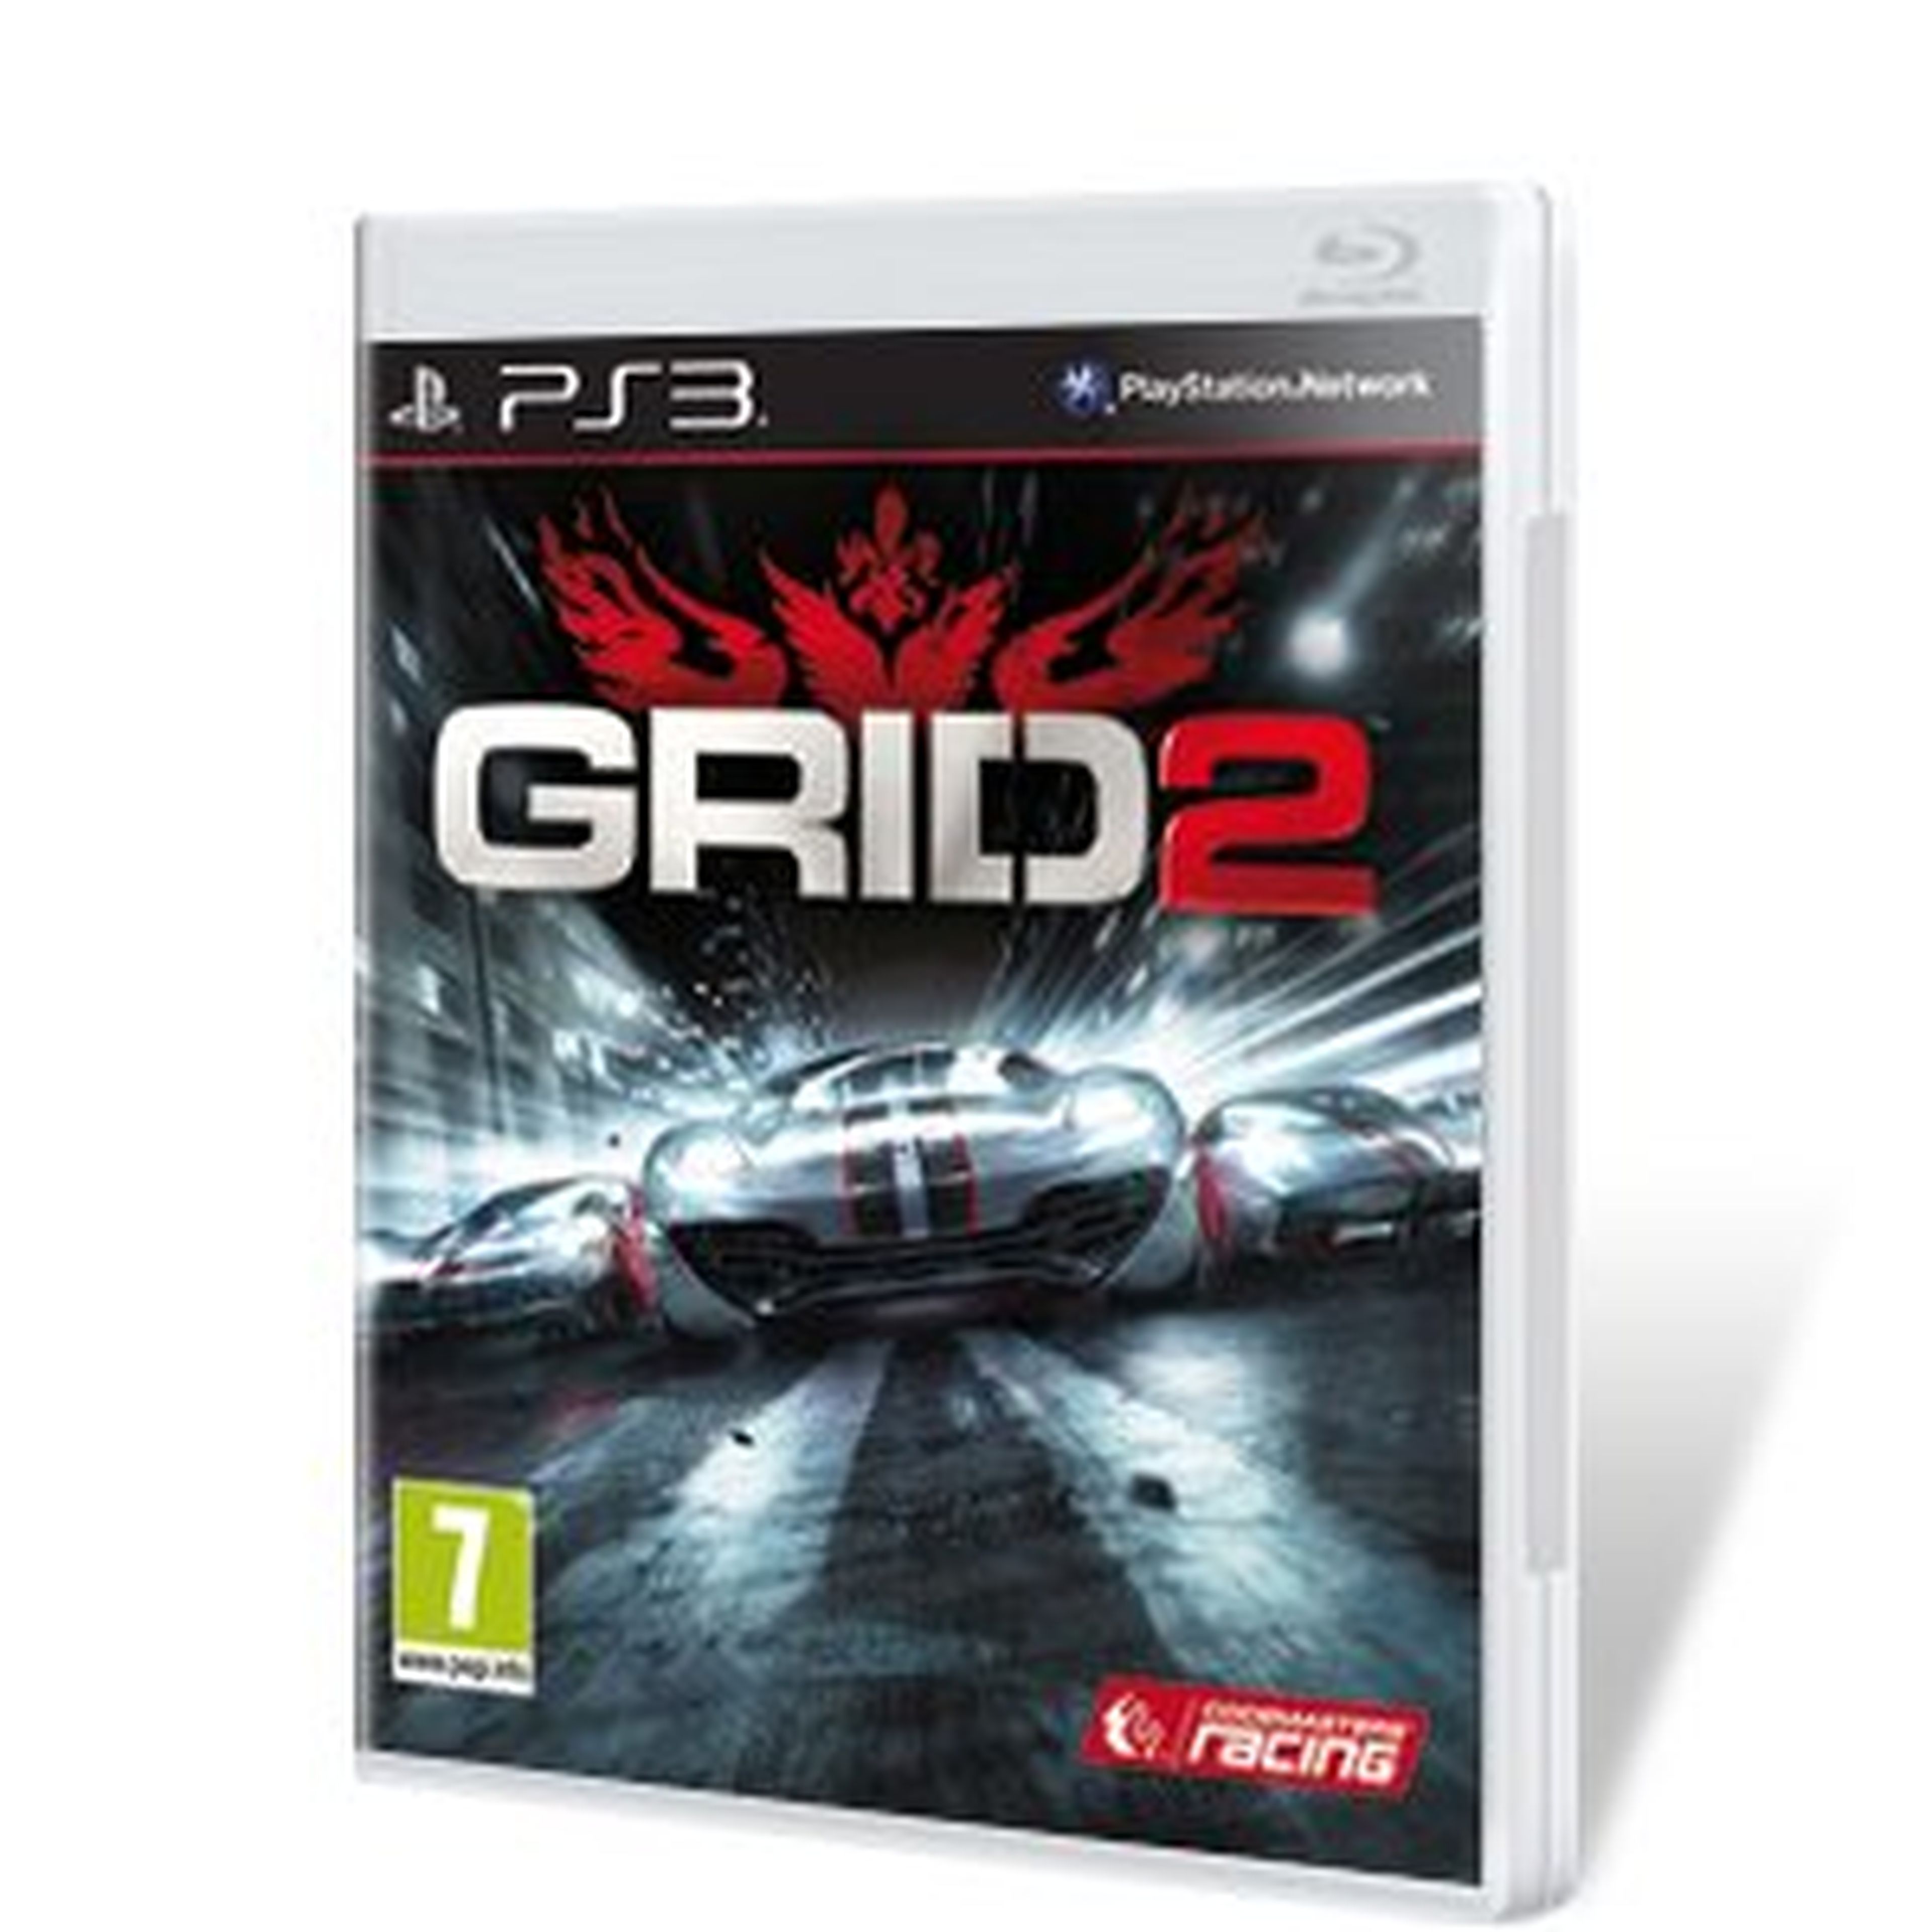 GRID 2 para PS3